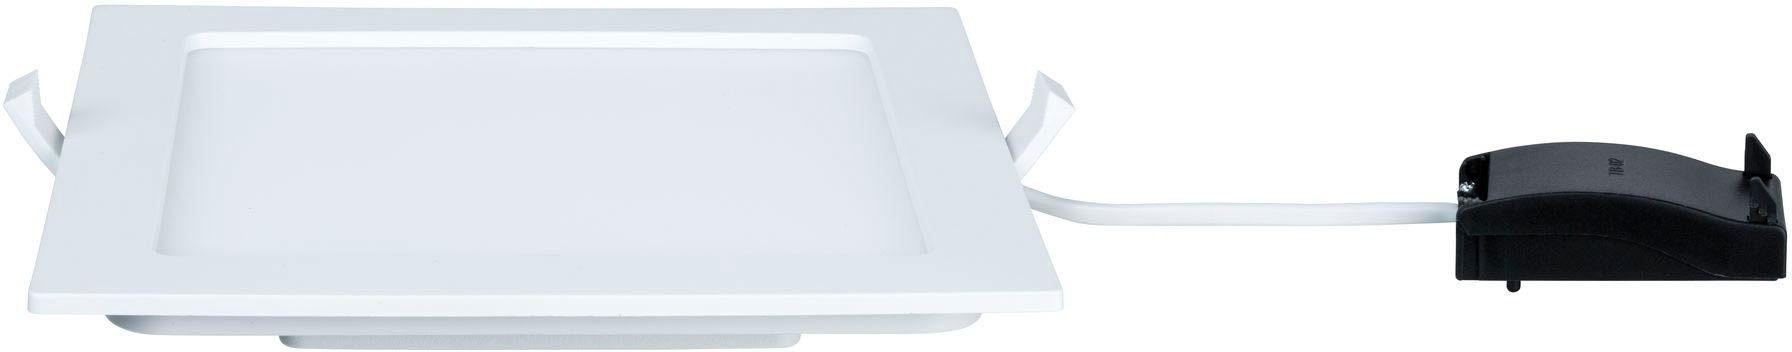 Paulmann LED Deckenleuchte, 1 flammig, Panel Dimmbar Badleuchte Weiß eckig 9W IP44 spritzwassergeschützt